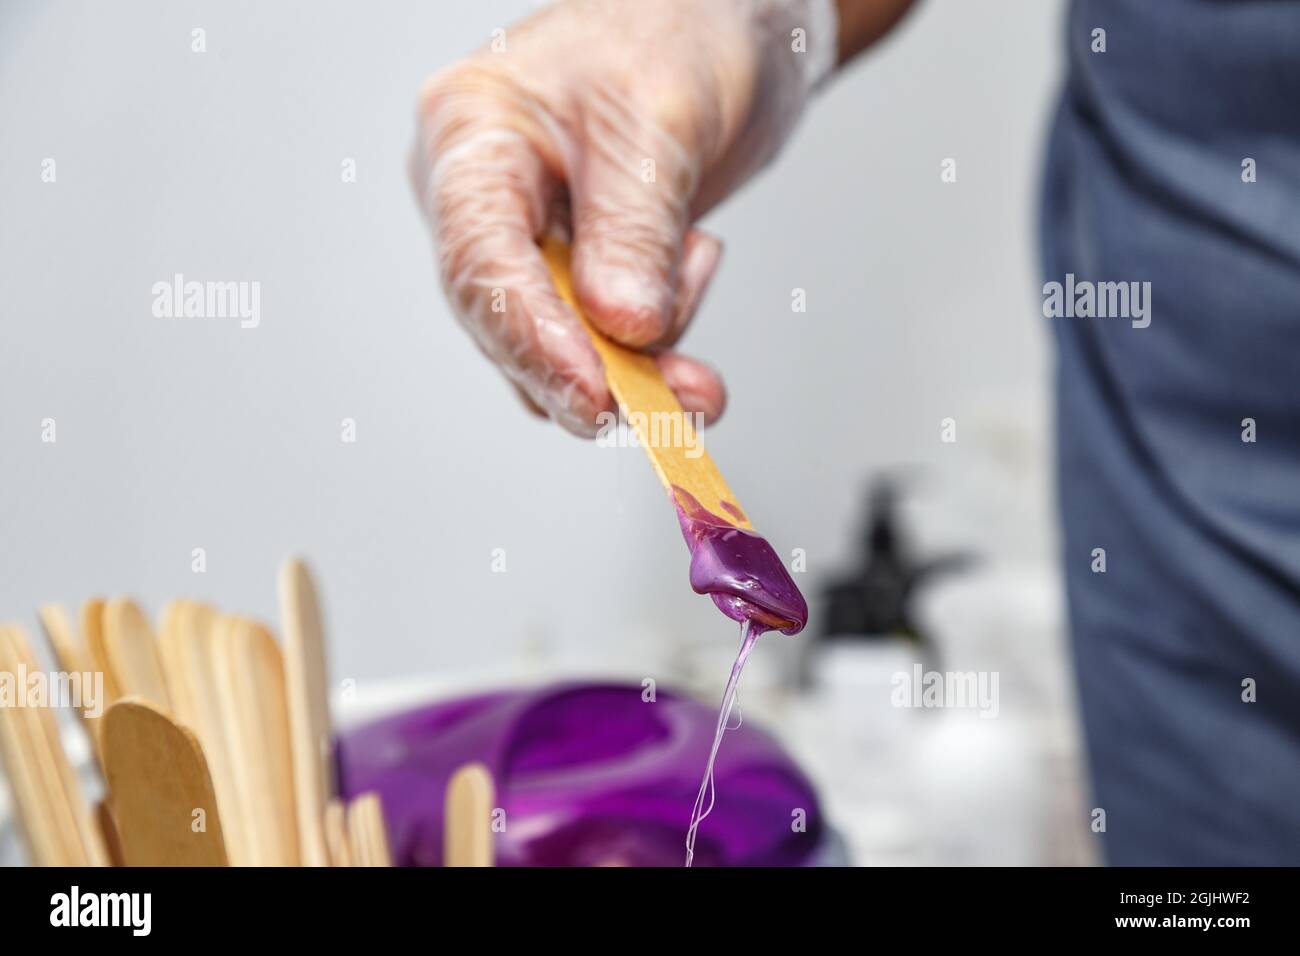 Cire violette fondue sur bâton de bois pour l'épilation Banque D'Images